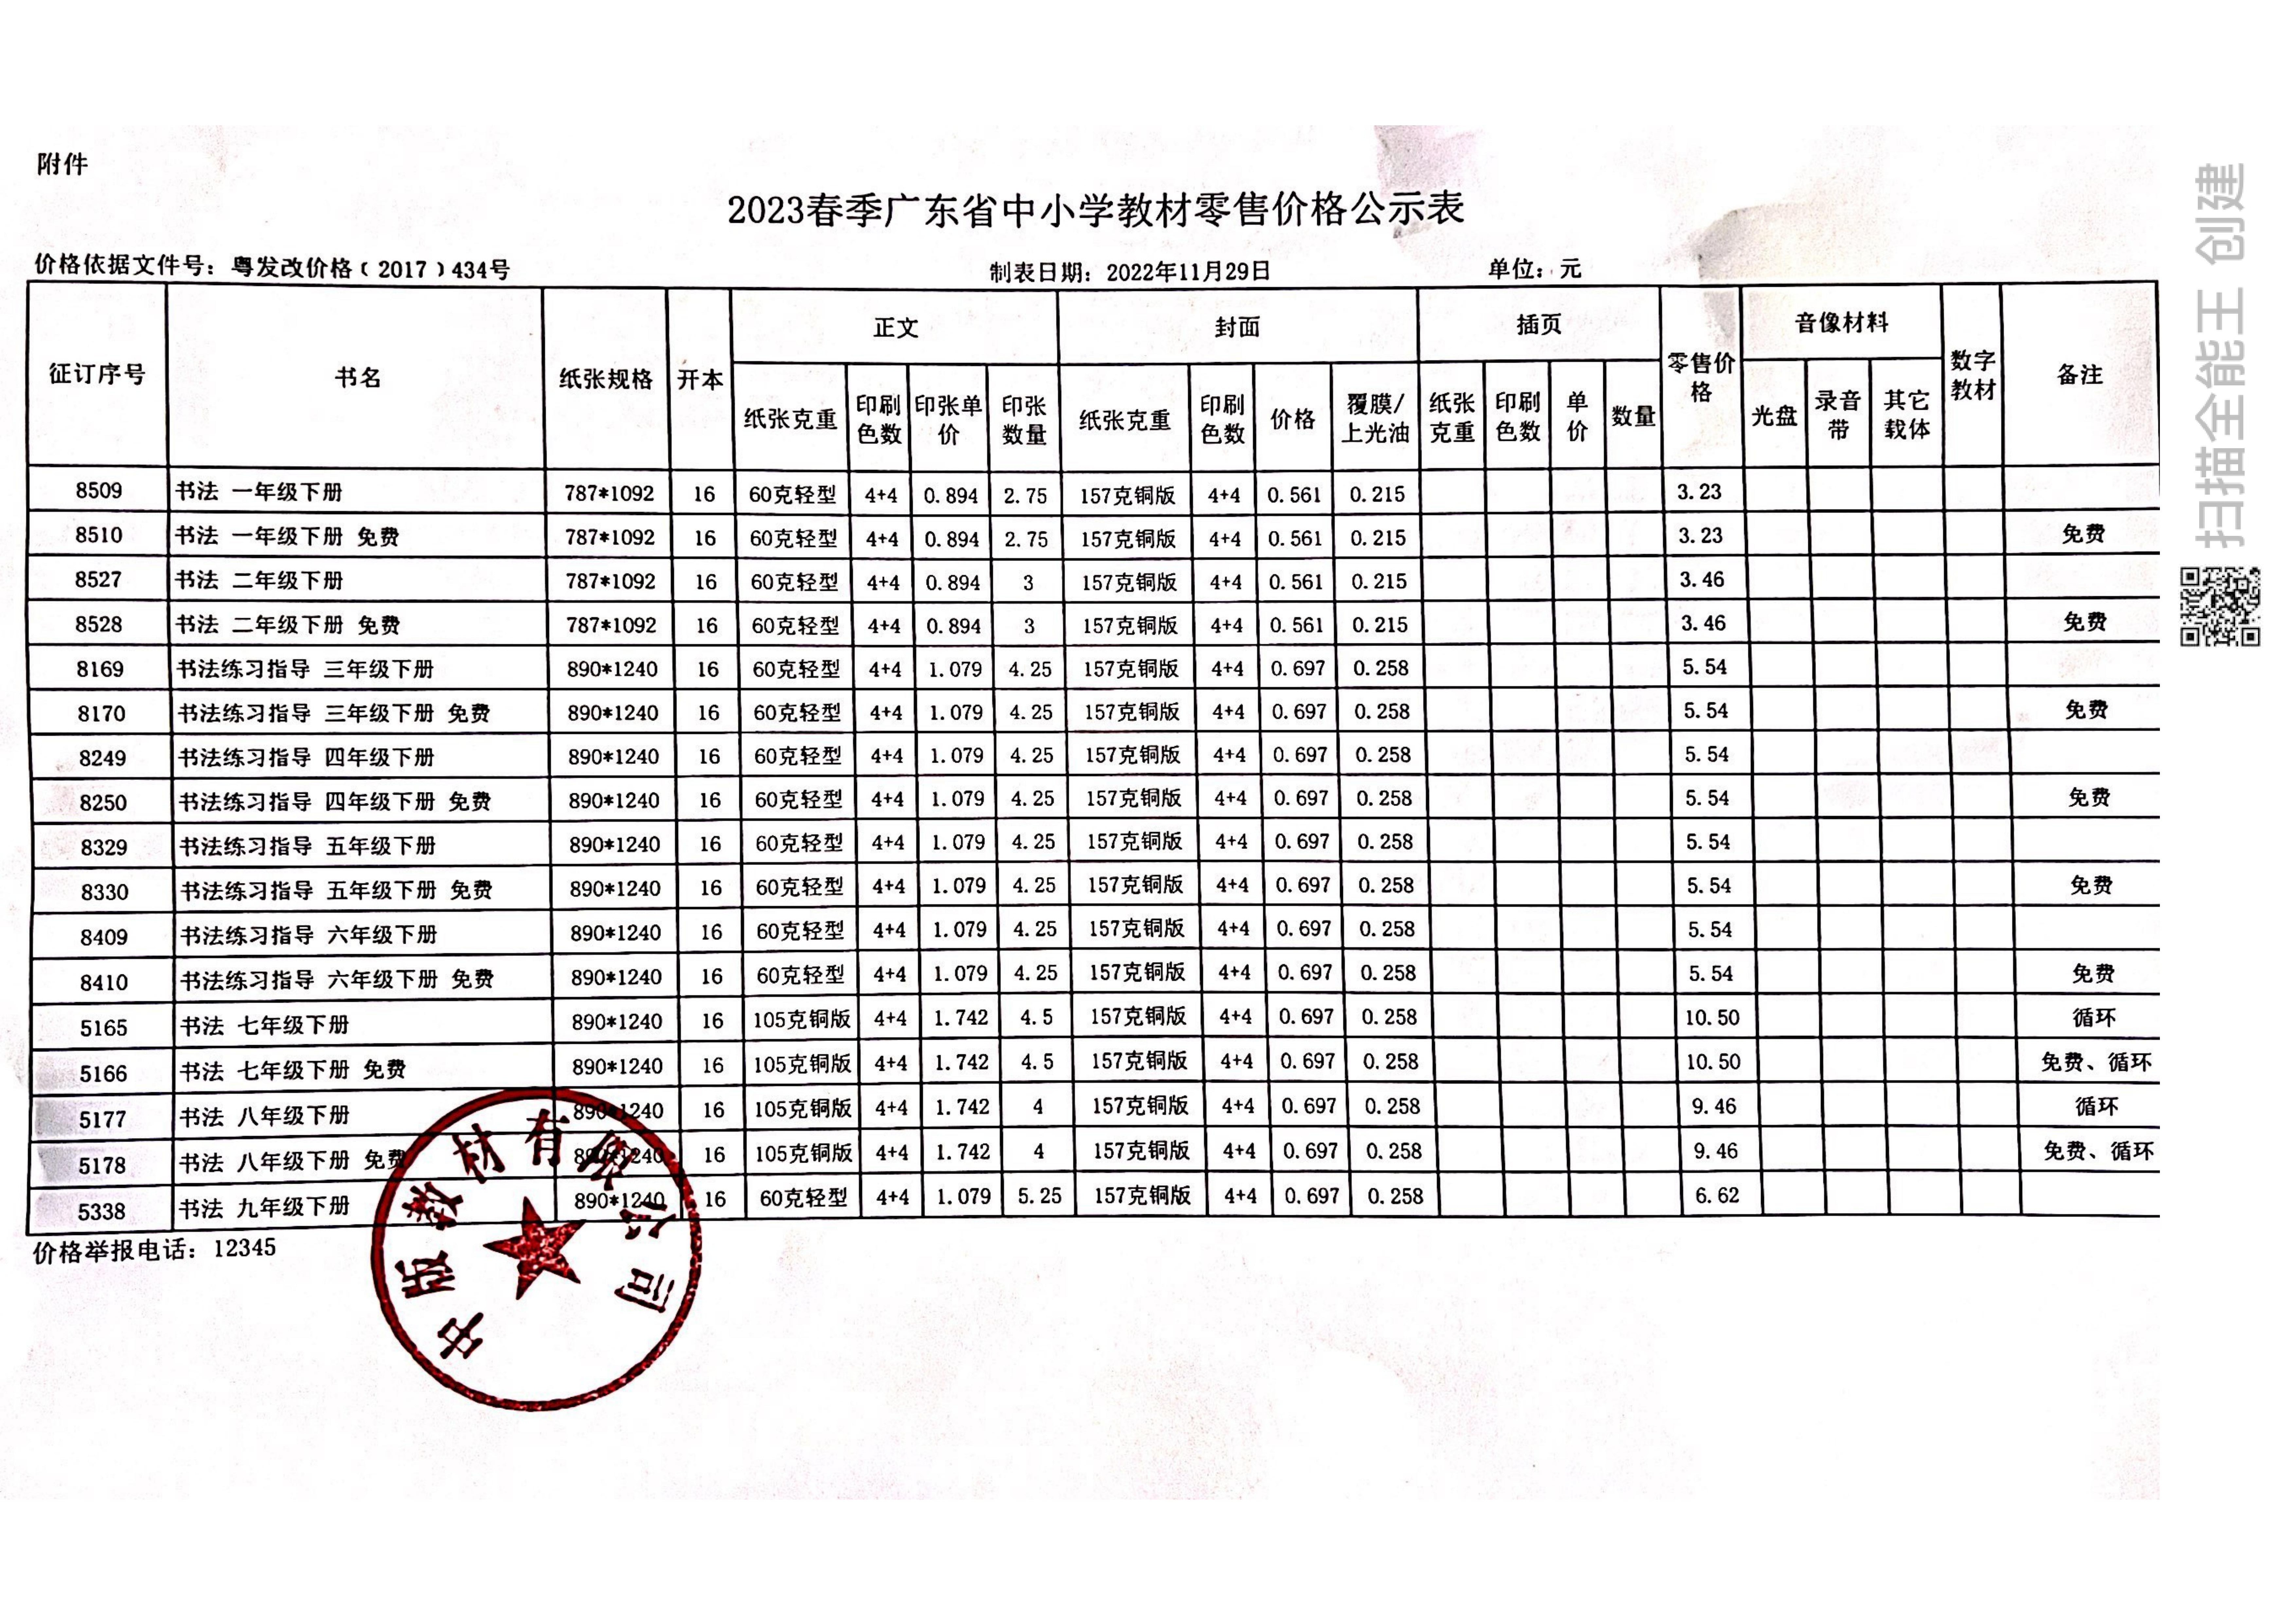 2022秋季广东省中小学教材零售价格公示表